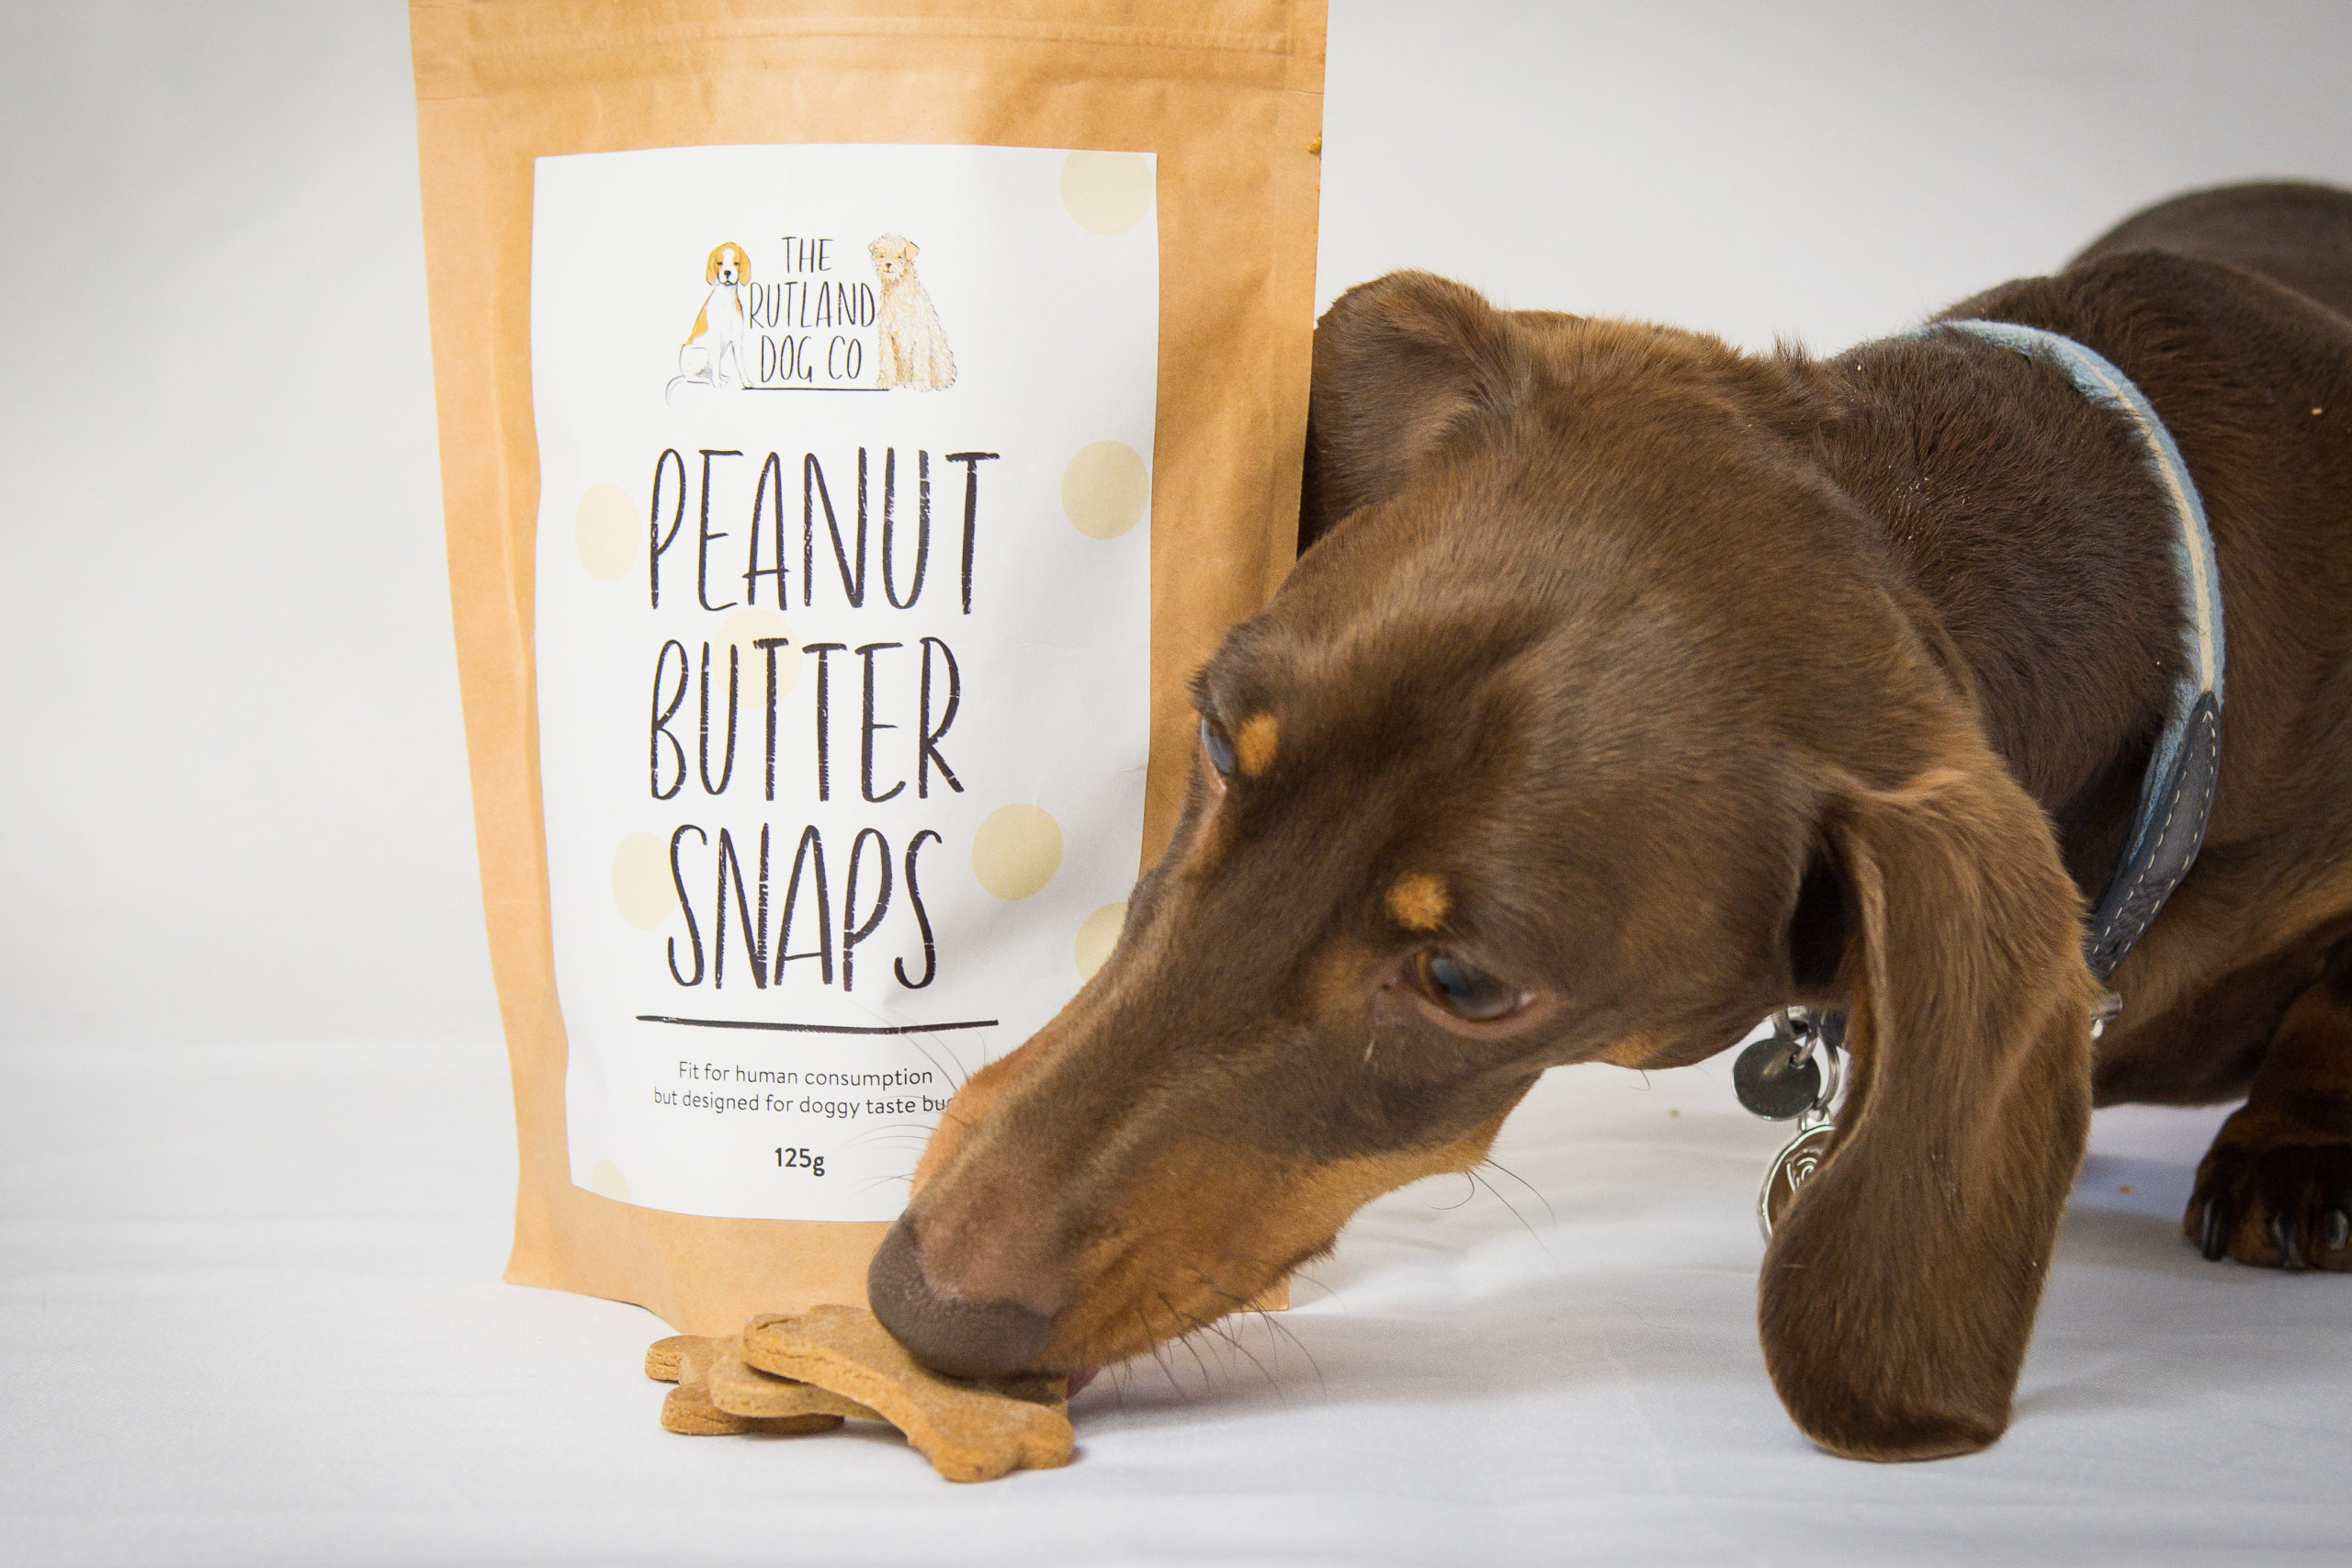 Peanut Butter Snaps 125g - The Rutland Dog Walker